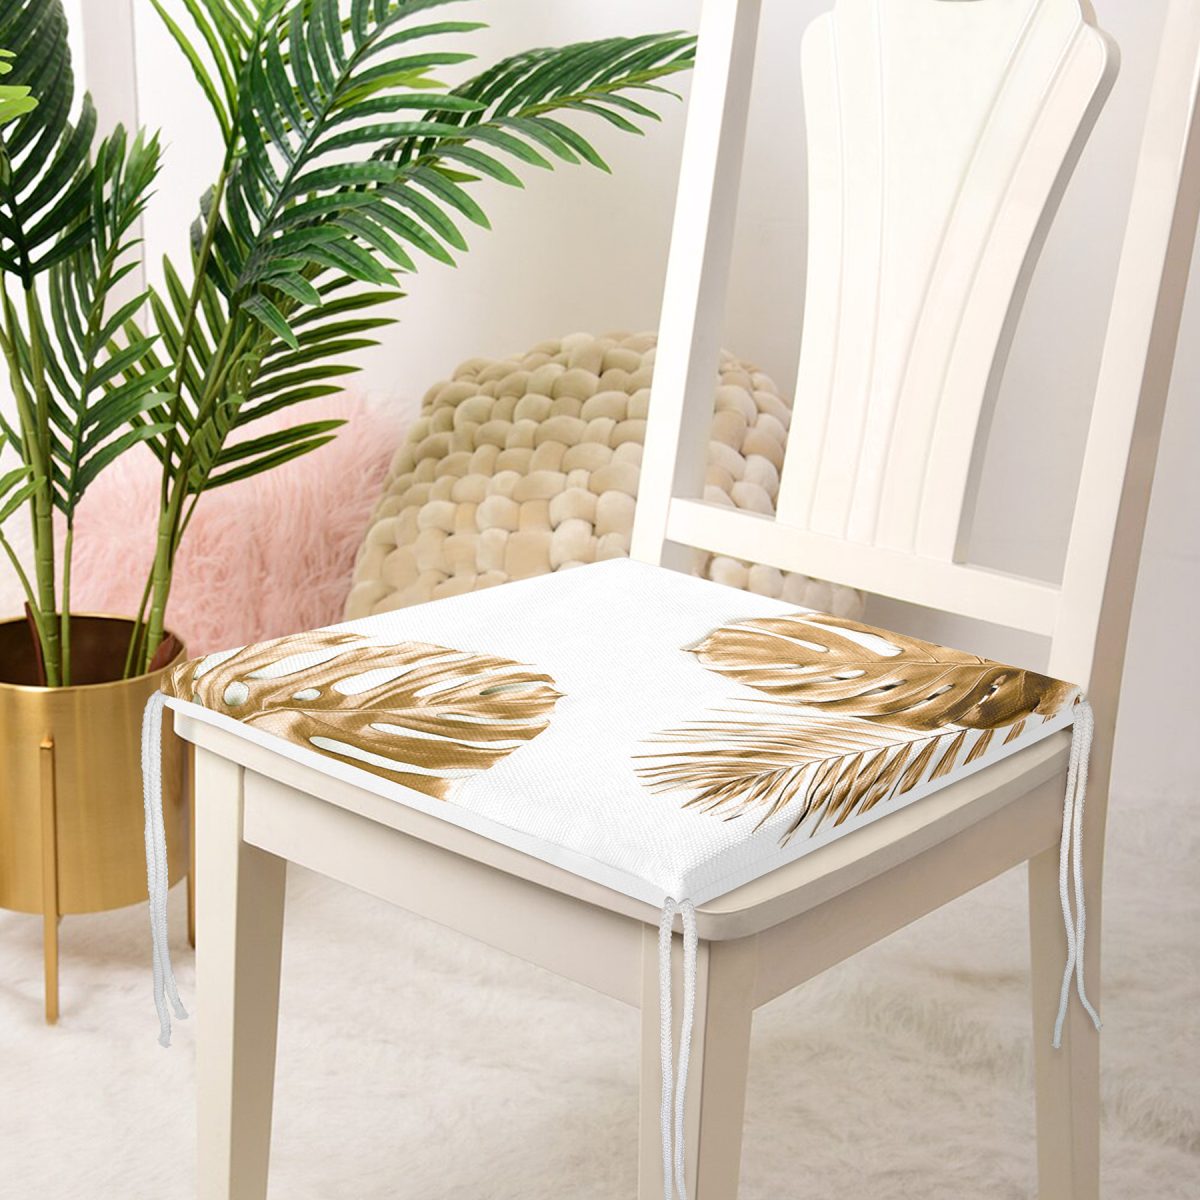 3D Altın Renkli Palmiye Yaprakları Desenli Dekoratif Fermuarlı Sandalye Minderi Realhomes